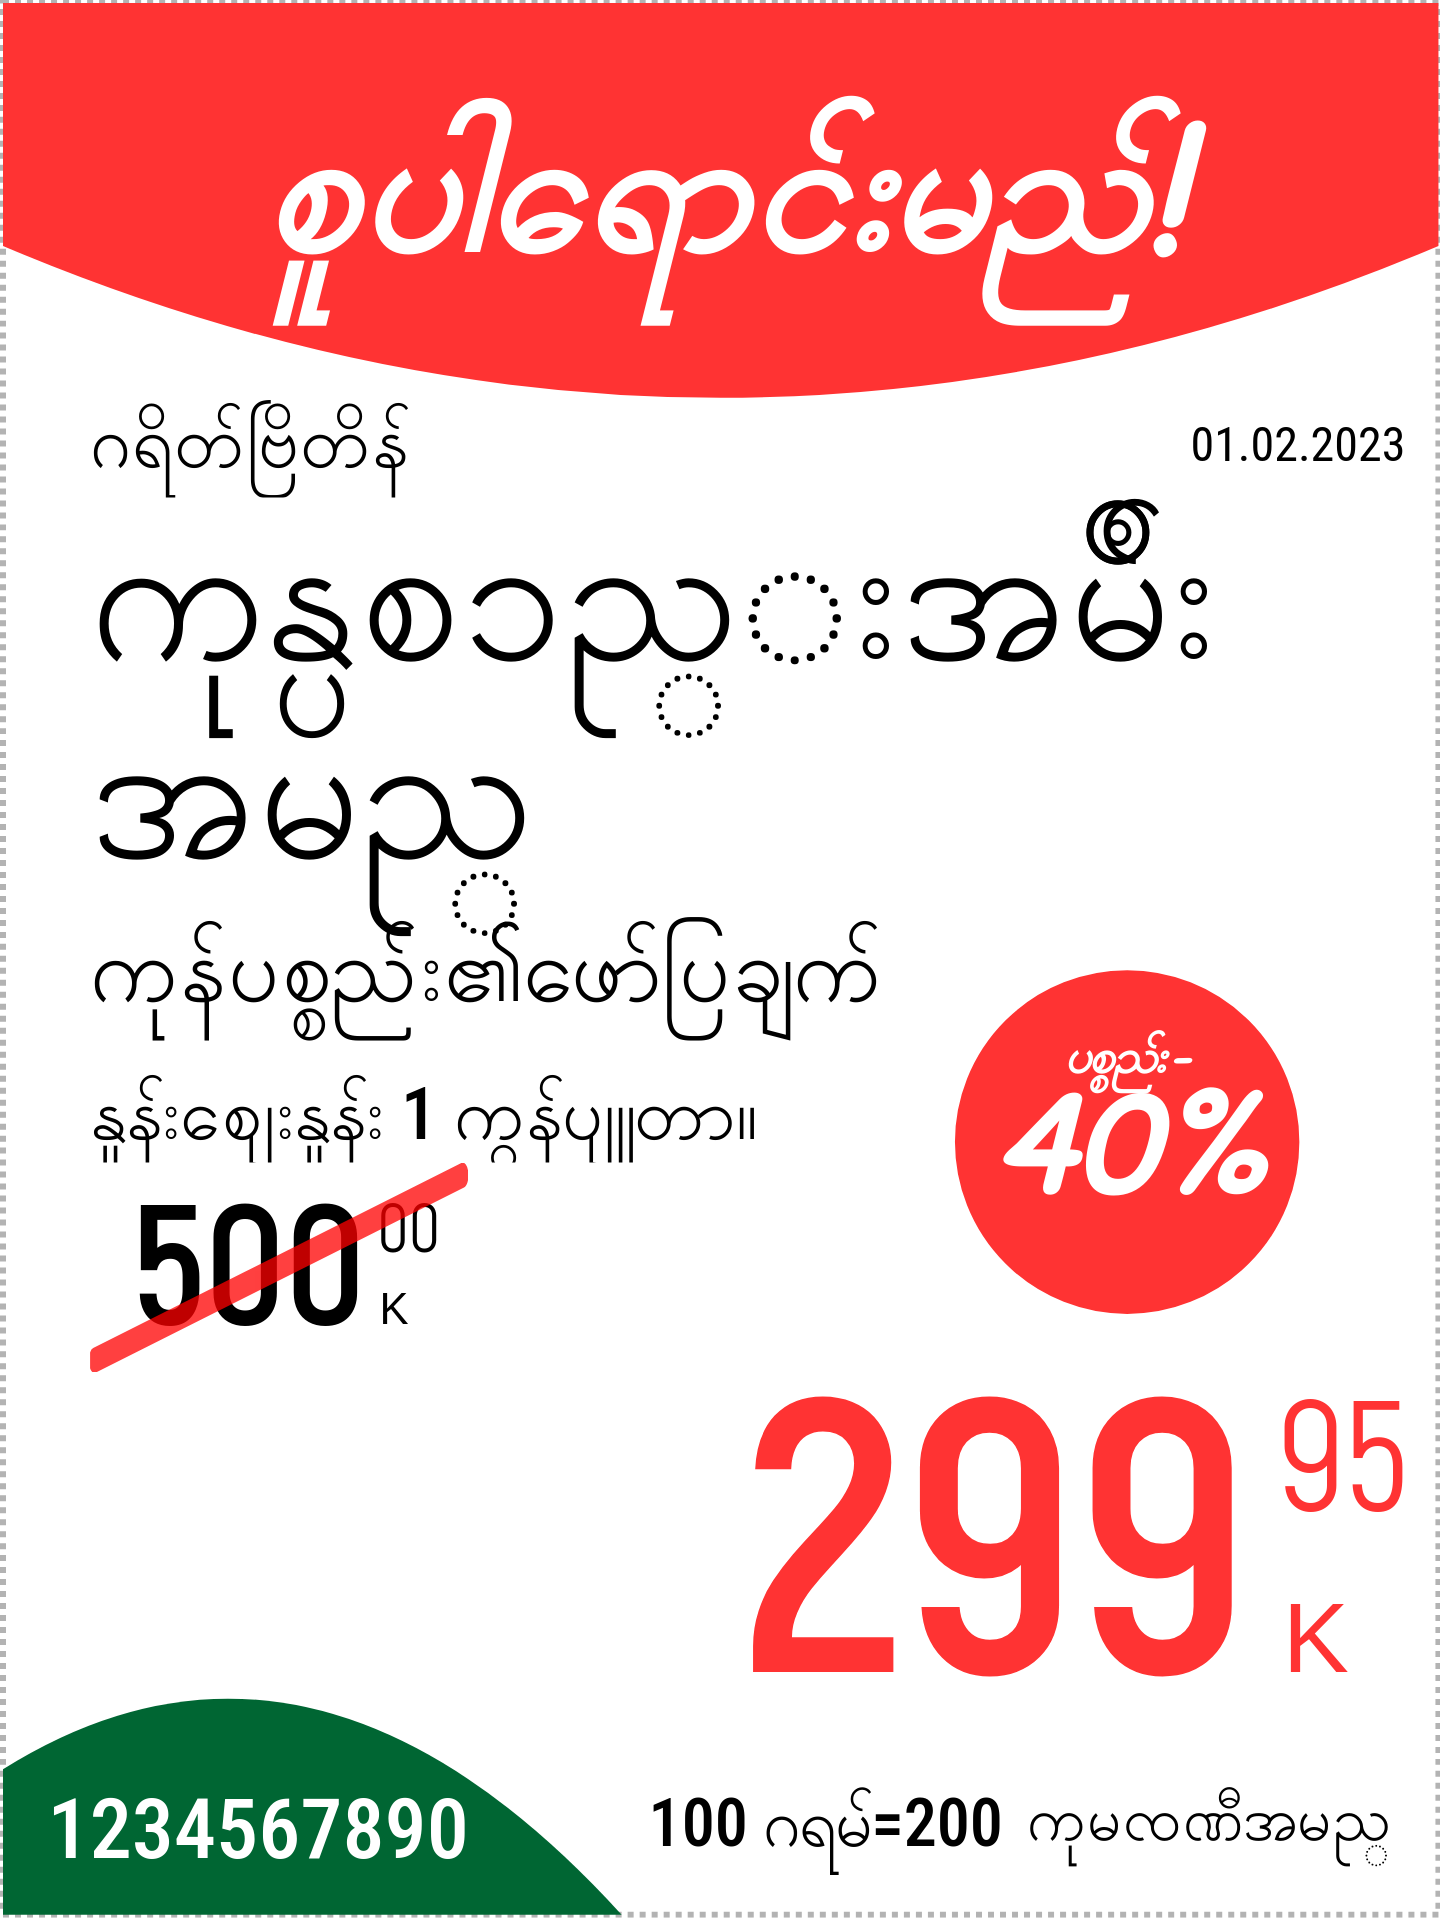 မြန်မာဘာသာ မူလနေရာ / ဒေါင်လိုက် / ပရိုမိုးရှင်း